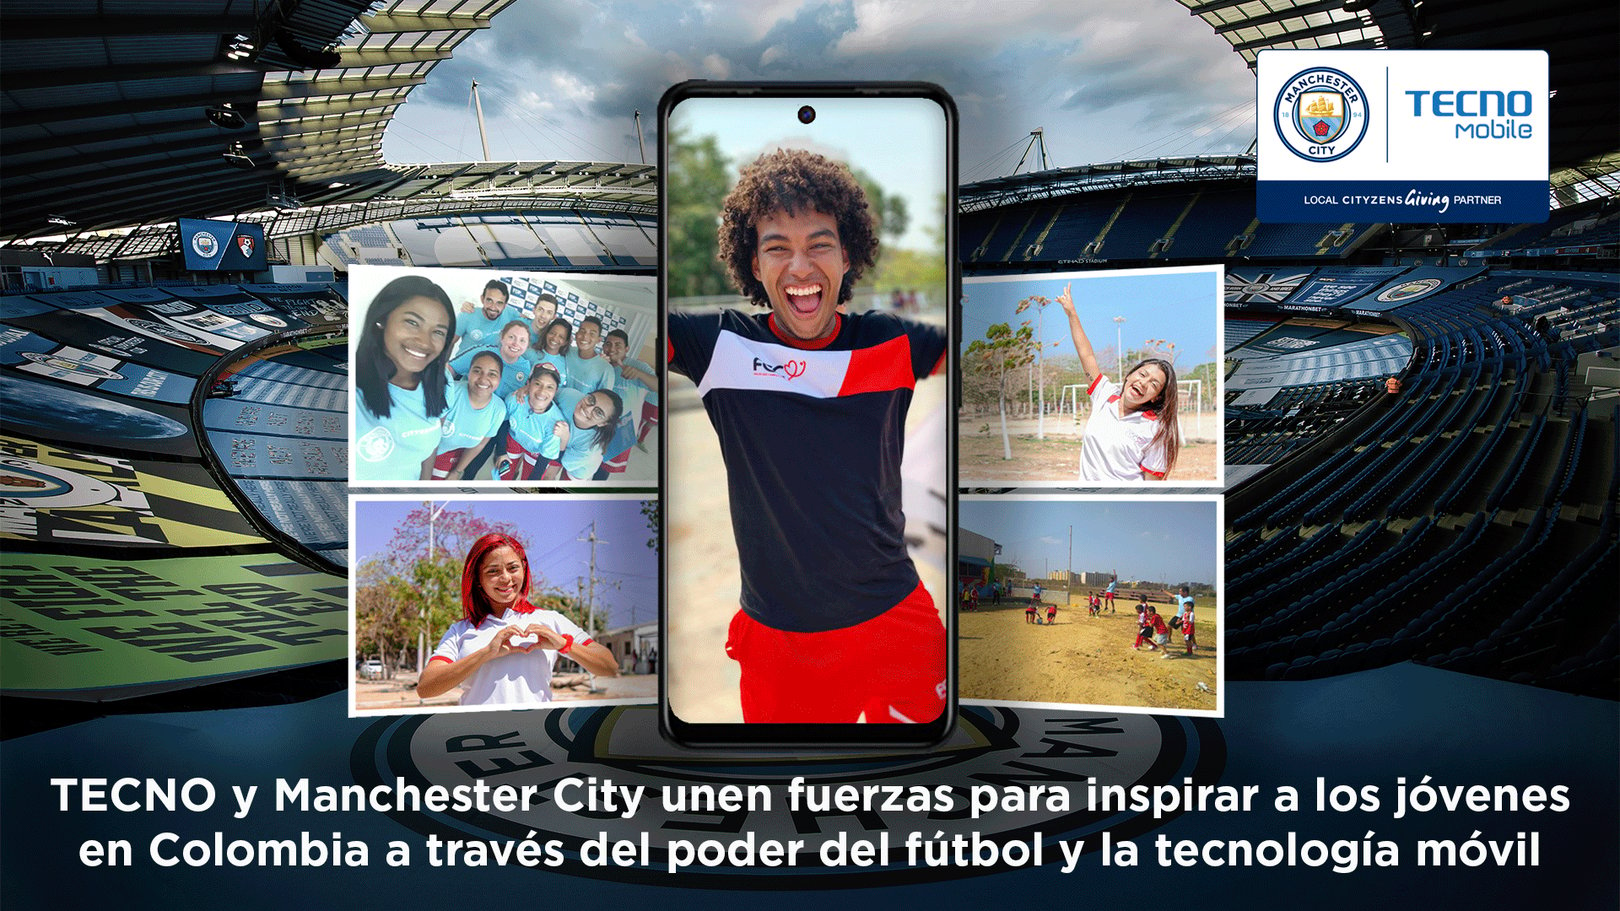 TECNO Mobile apuesta por nuevo programa de Cityzens Giving en Colombia 